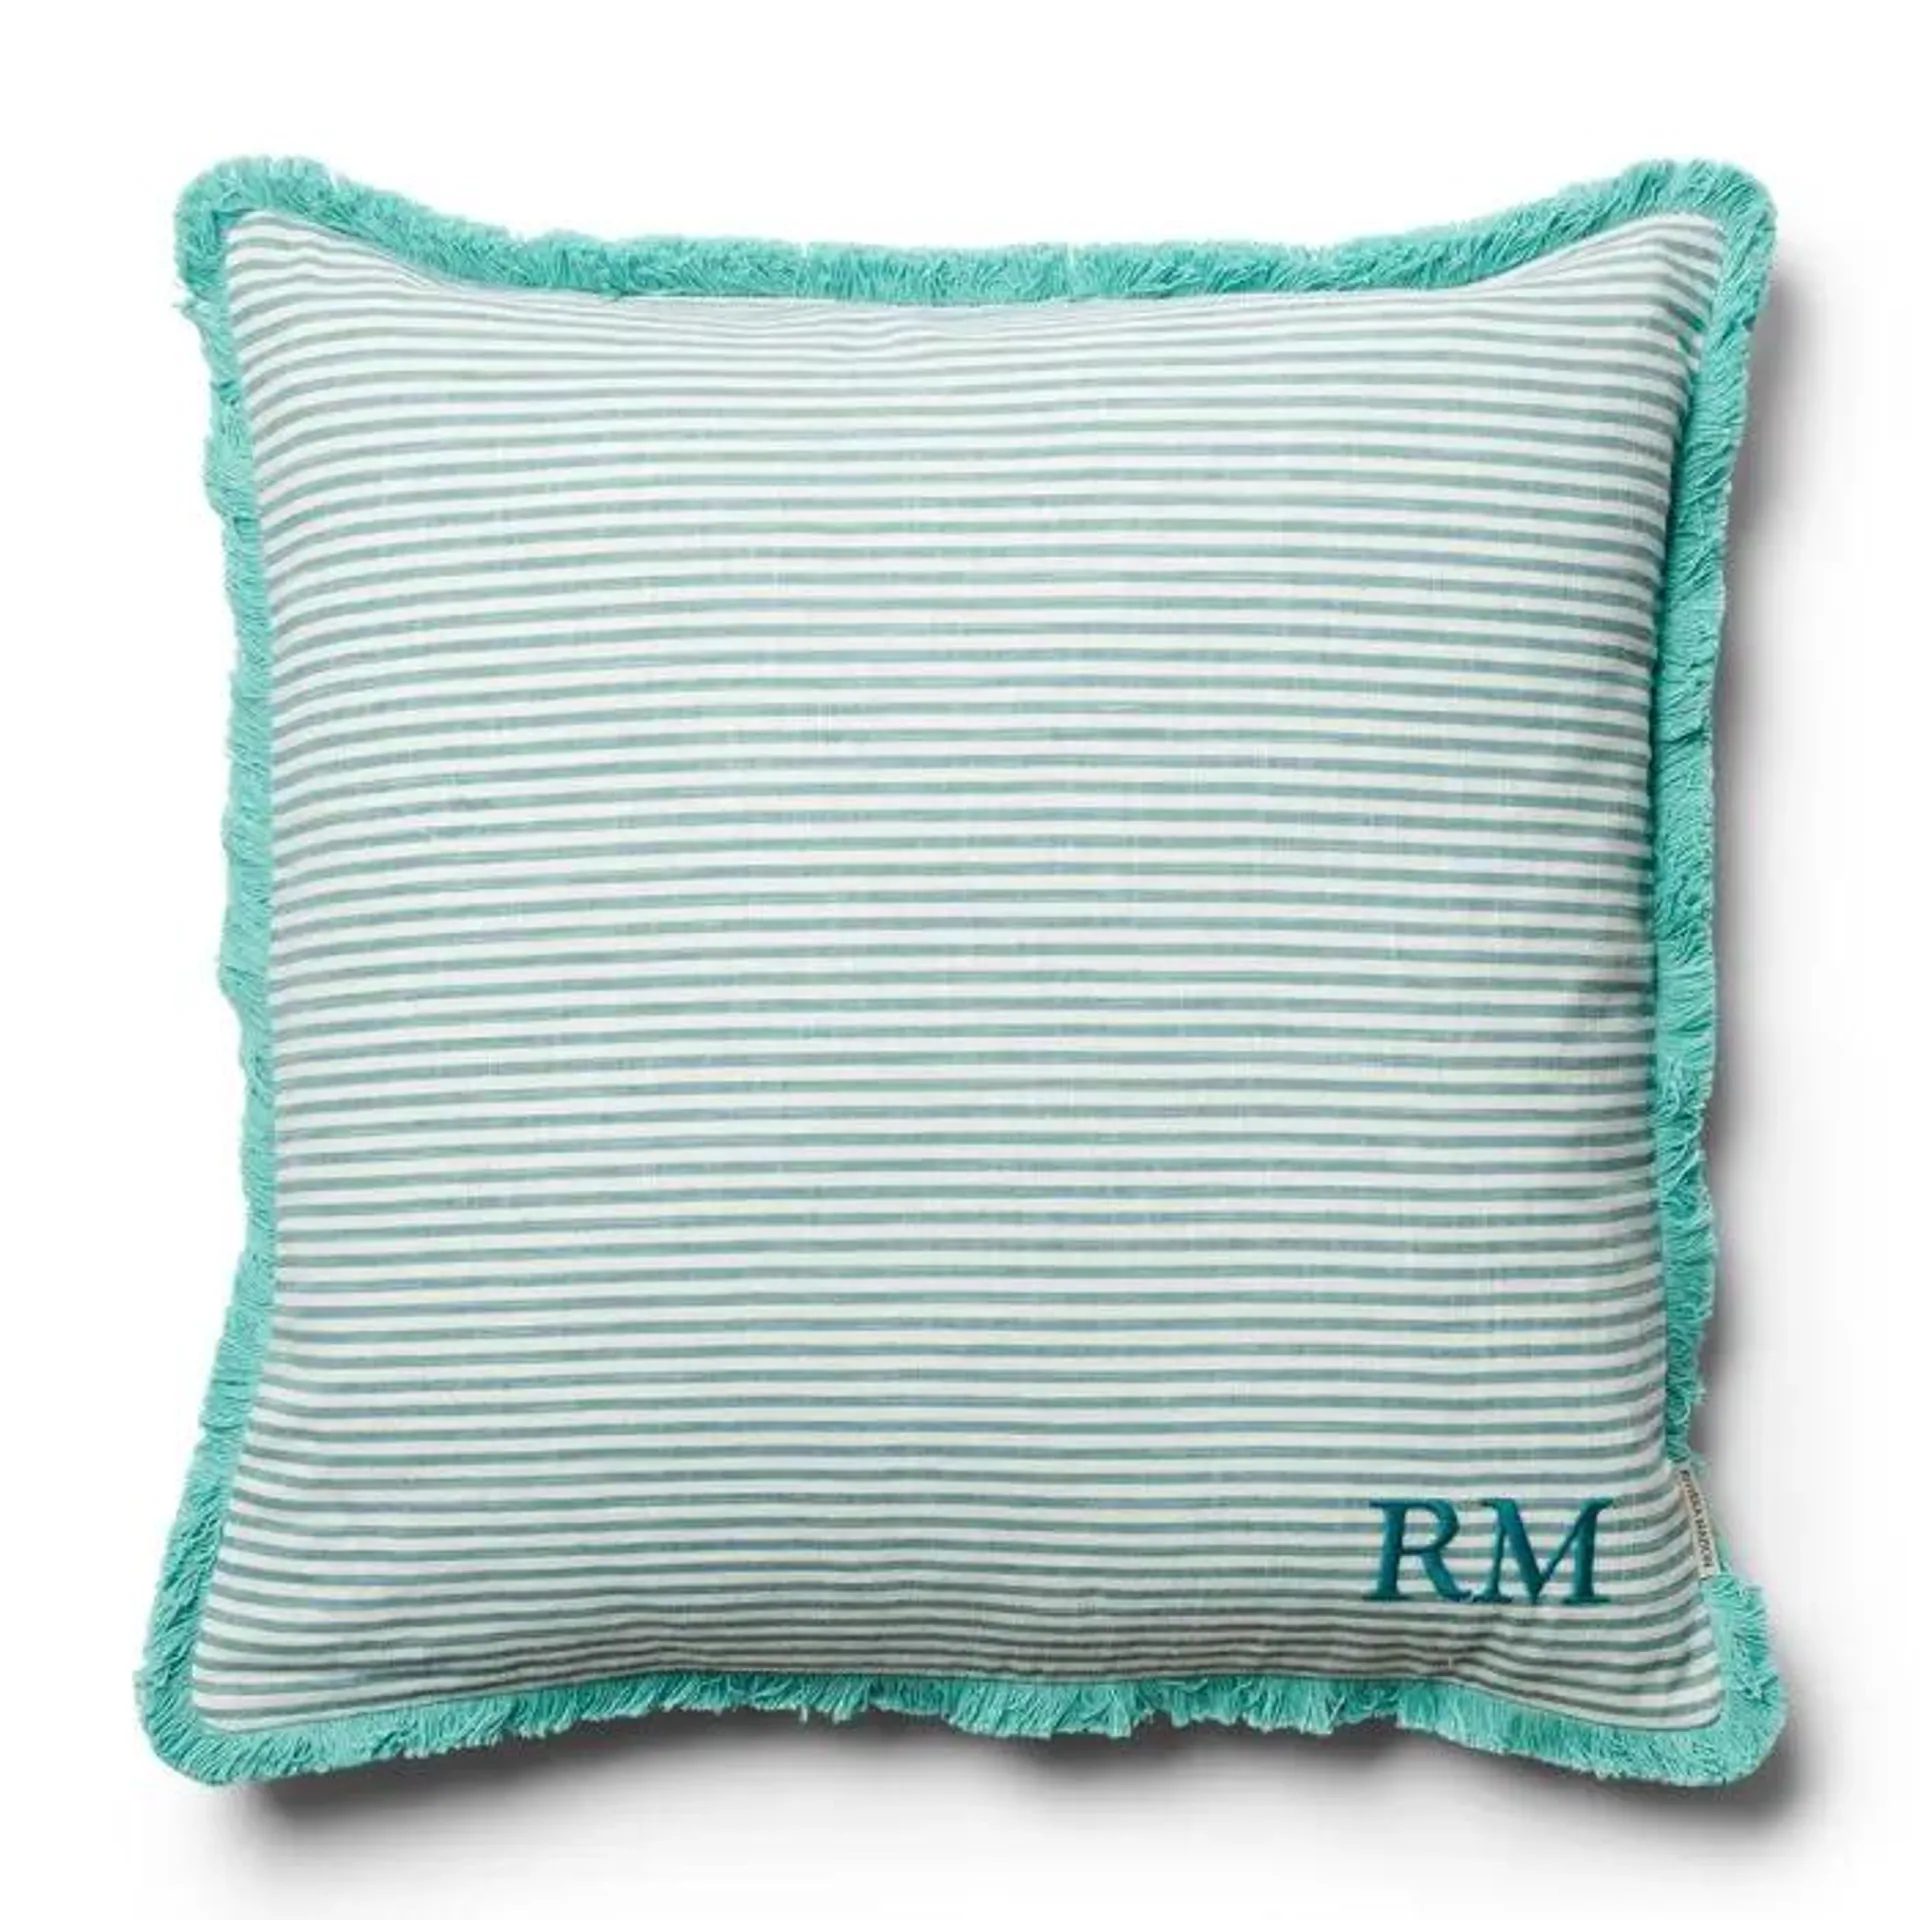 Cushion Cover RM Amai 50x50